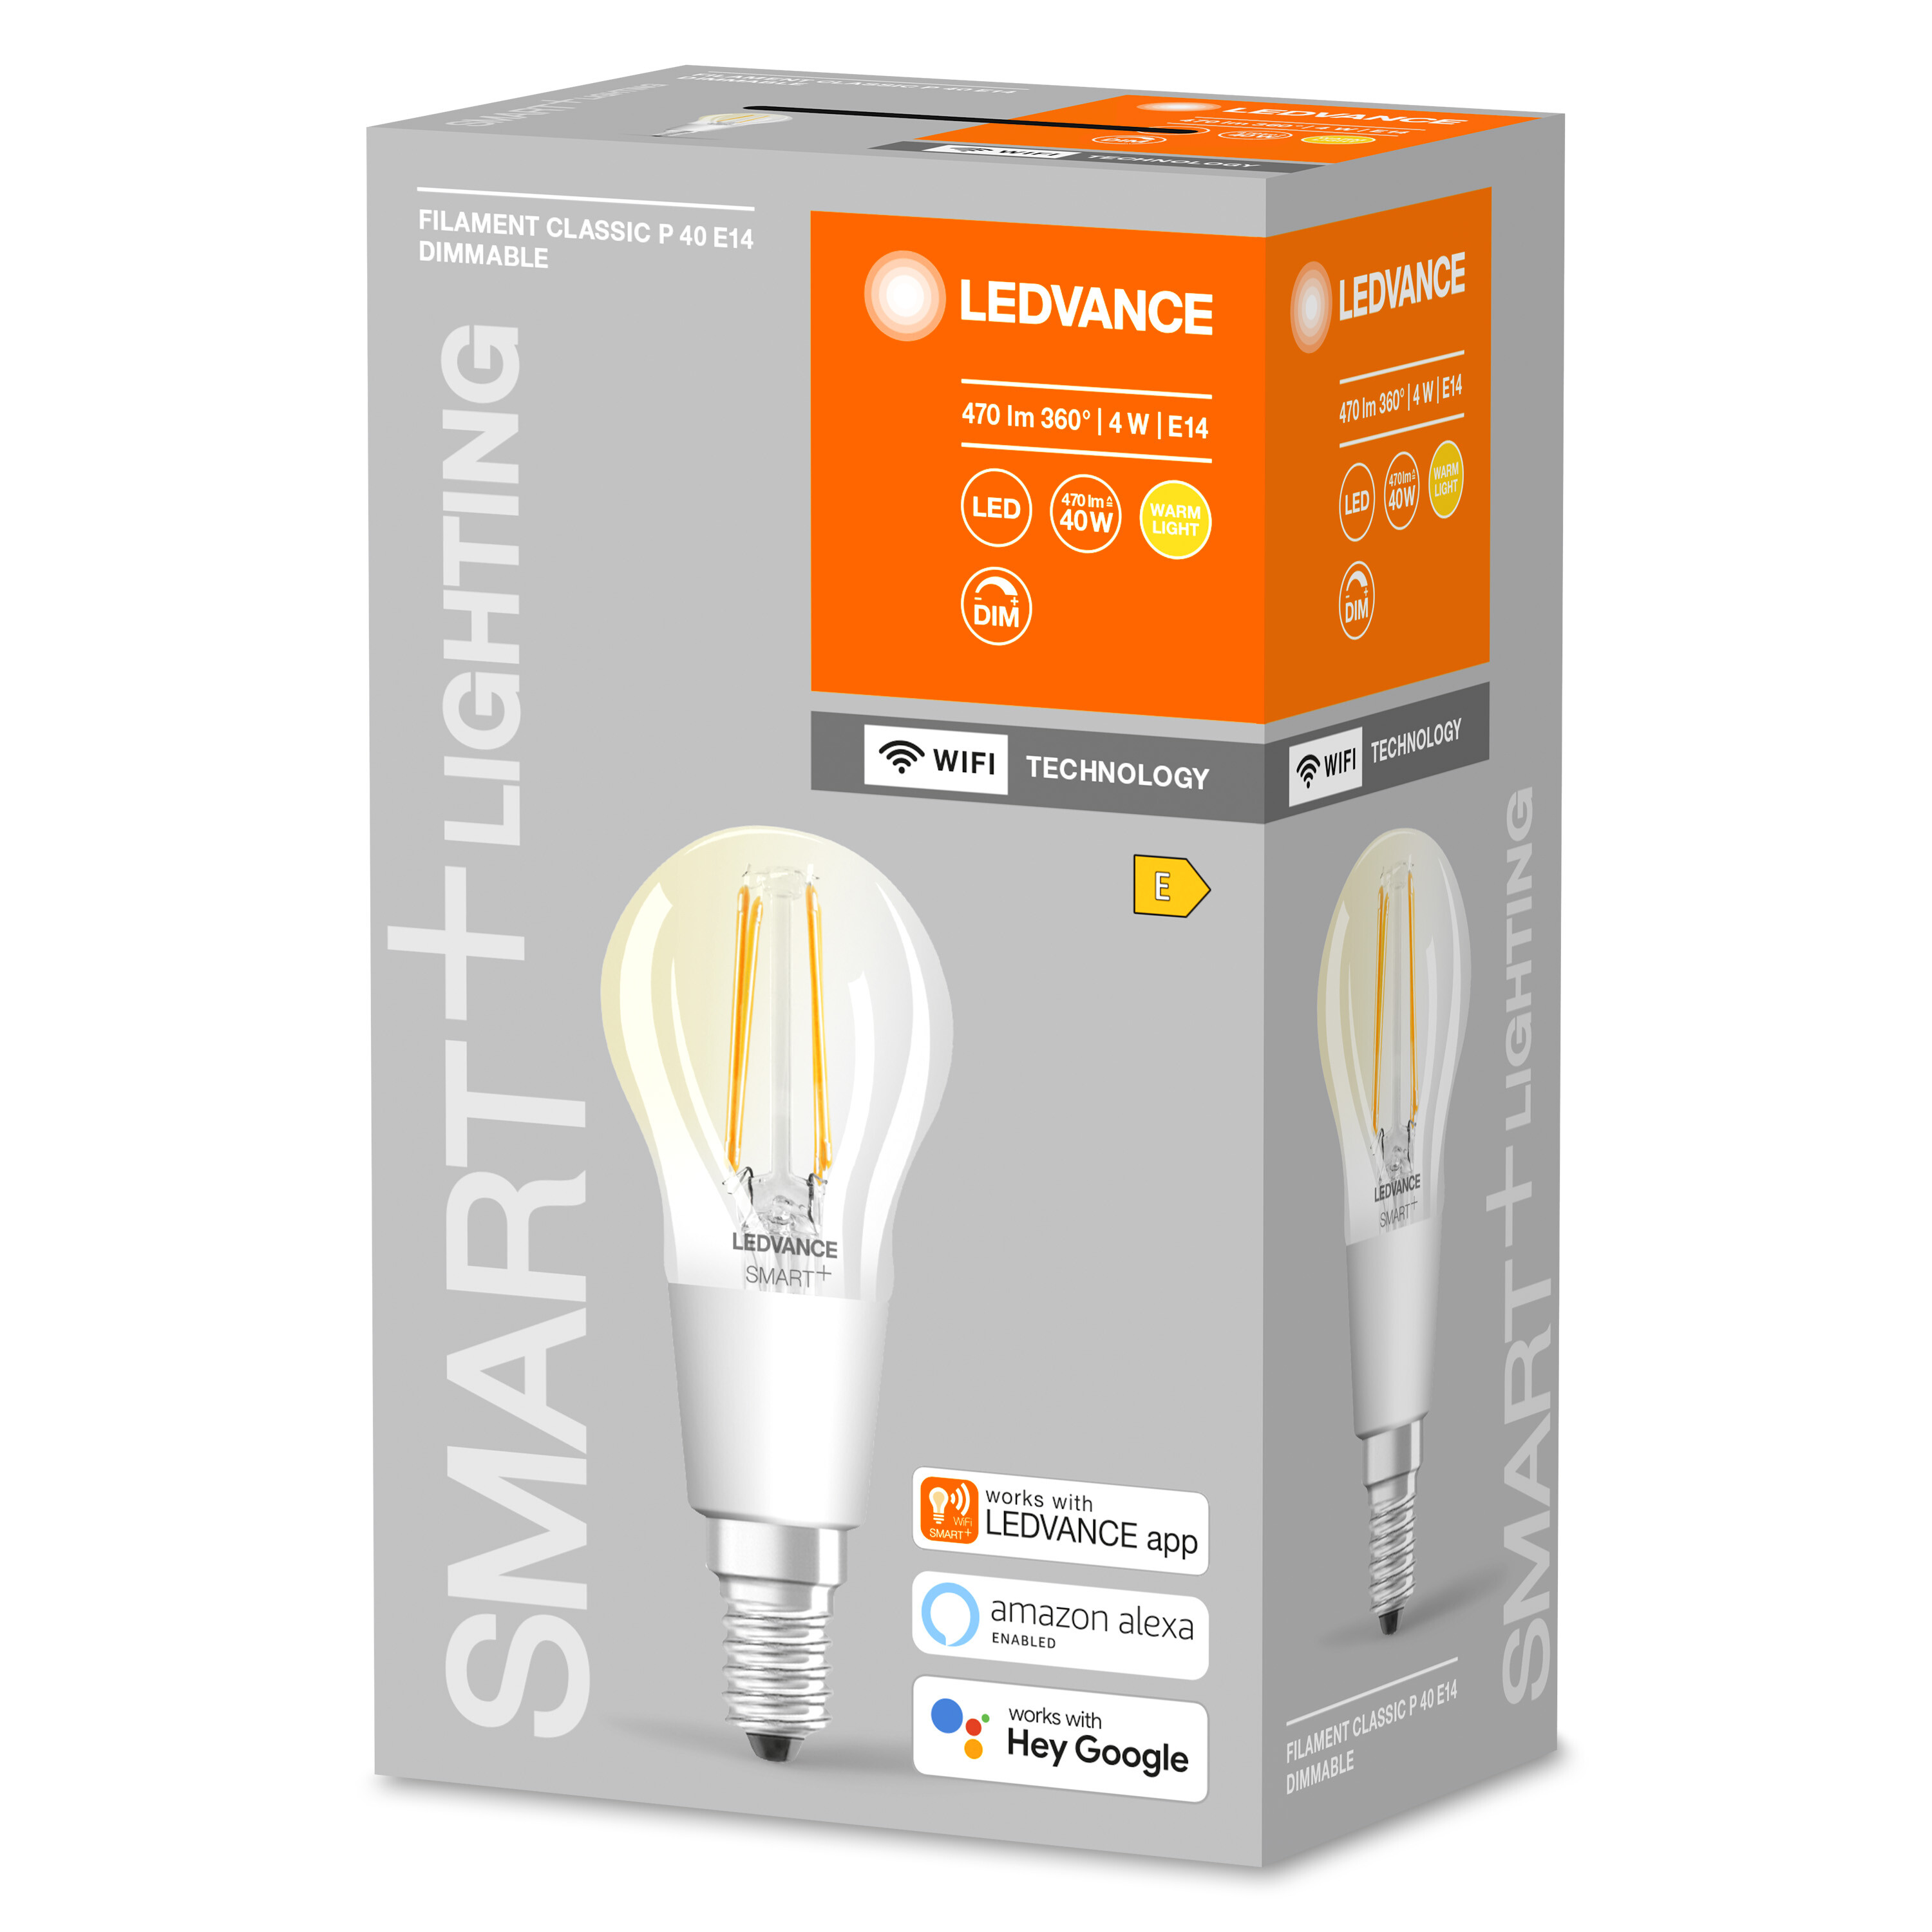 LEDVANCE SMART+ Filament Bulb 470 LED Dimmable Warmweiß Lampe E14 Lumen Mini